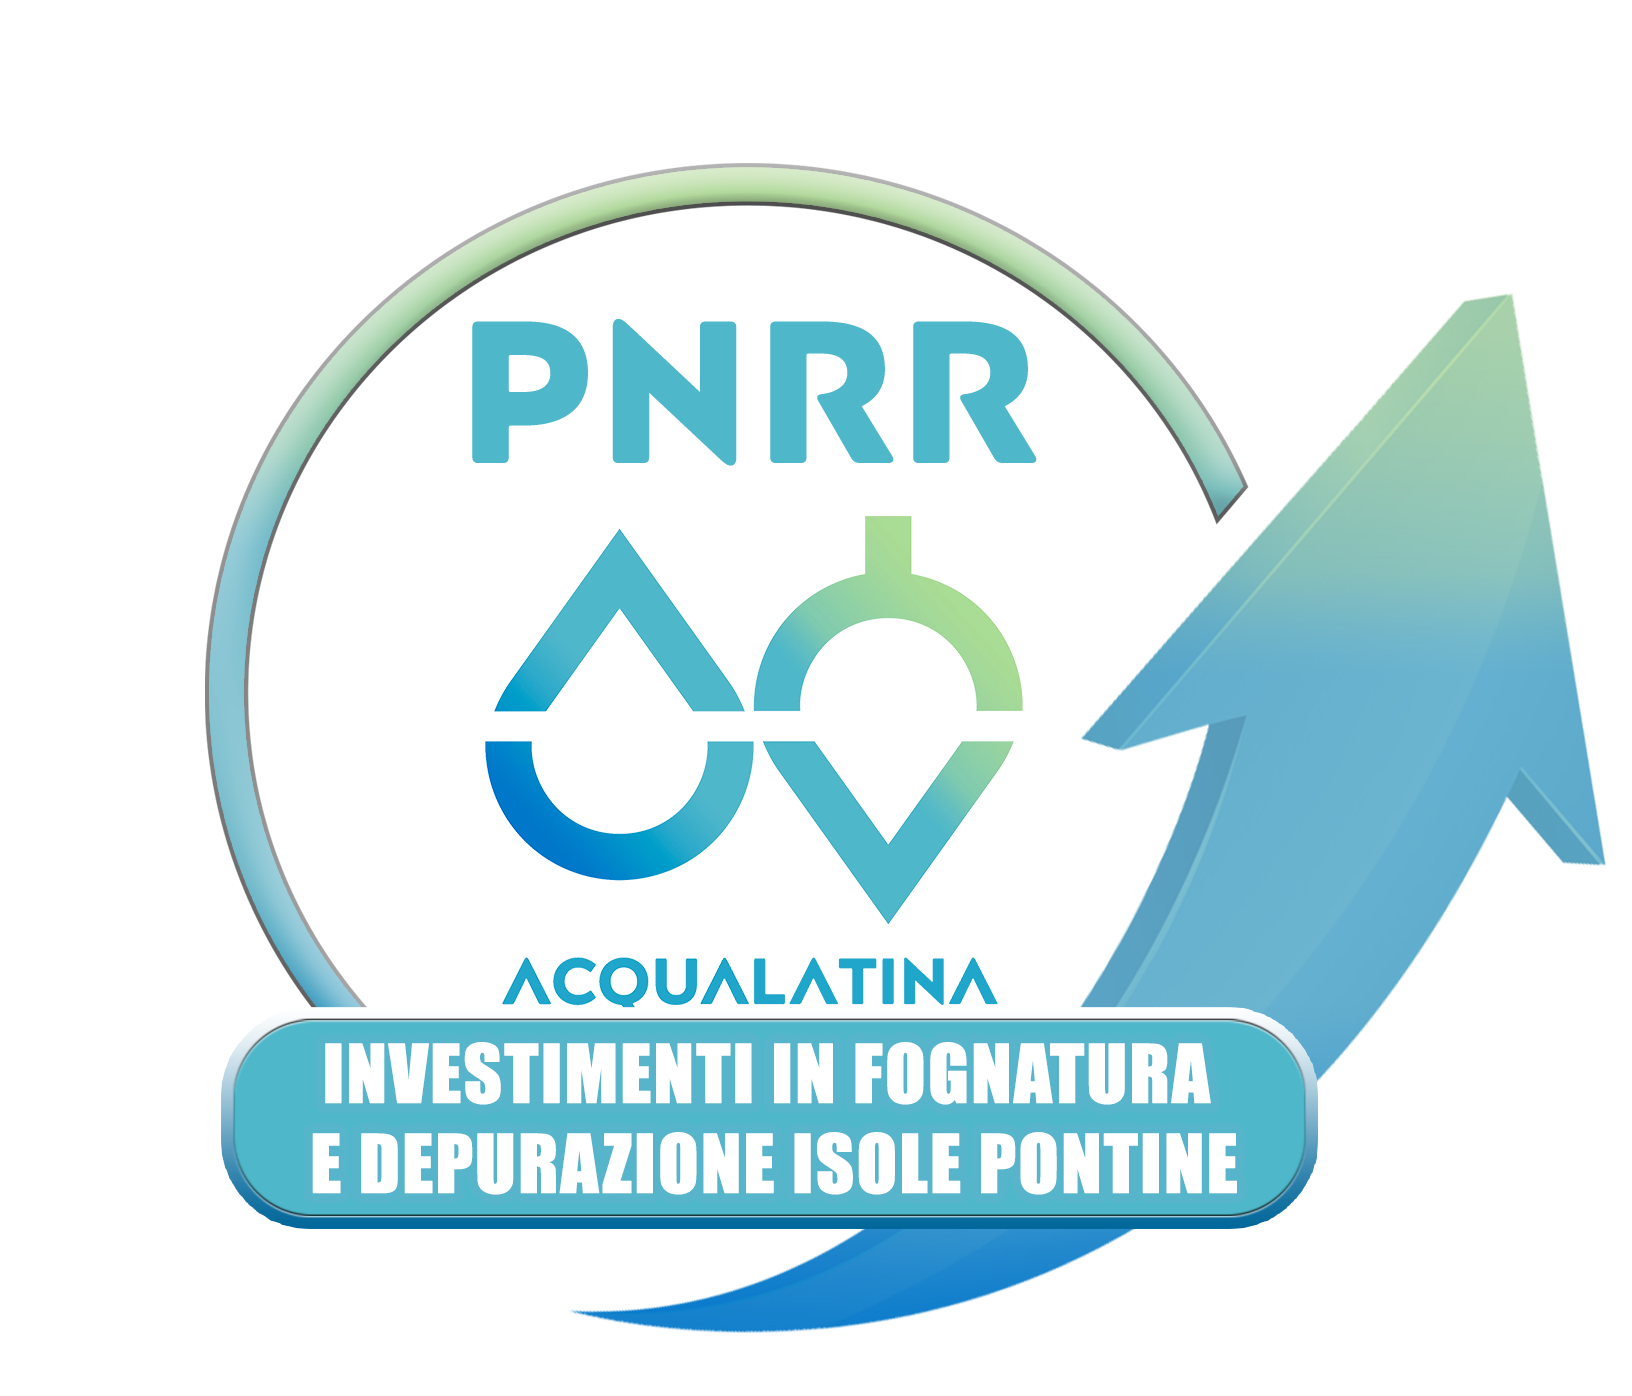 LOGO PNRR - Investimenti in fognatura e depurazione ISOLE PONTINE